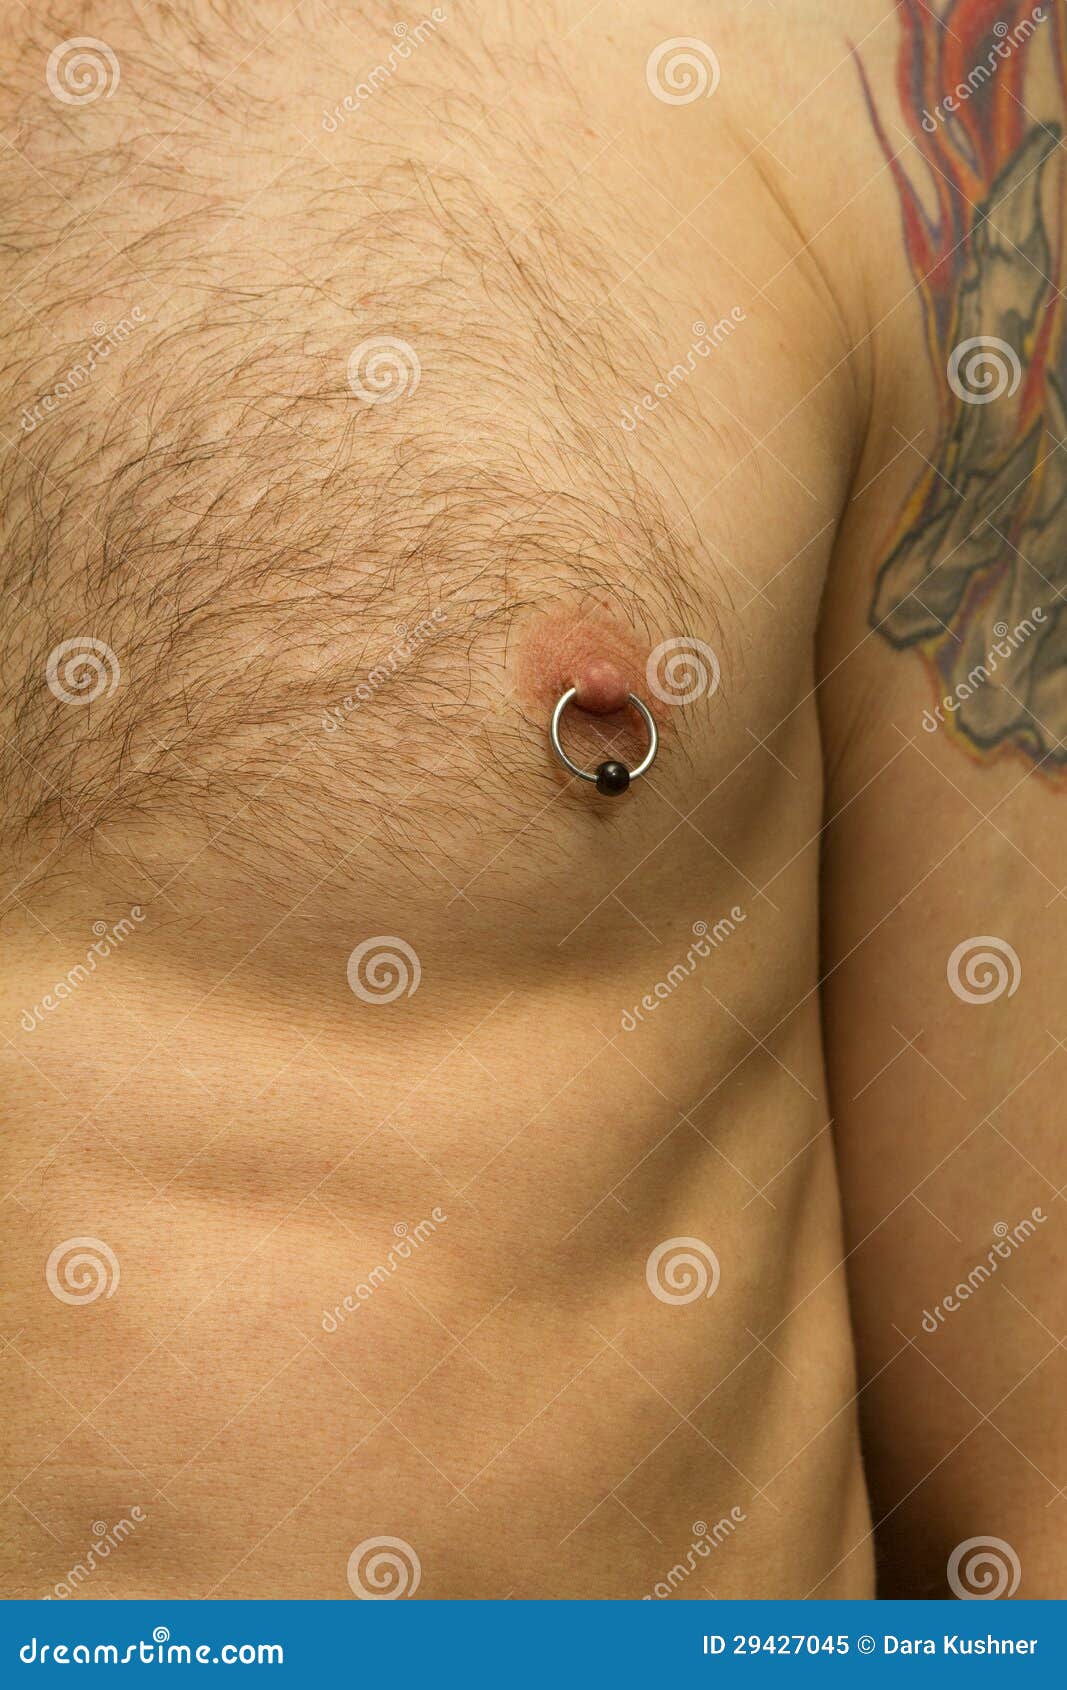 пирсинг для мужчин на груди фото 4